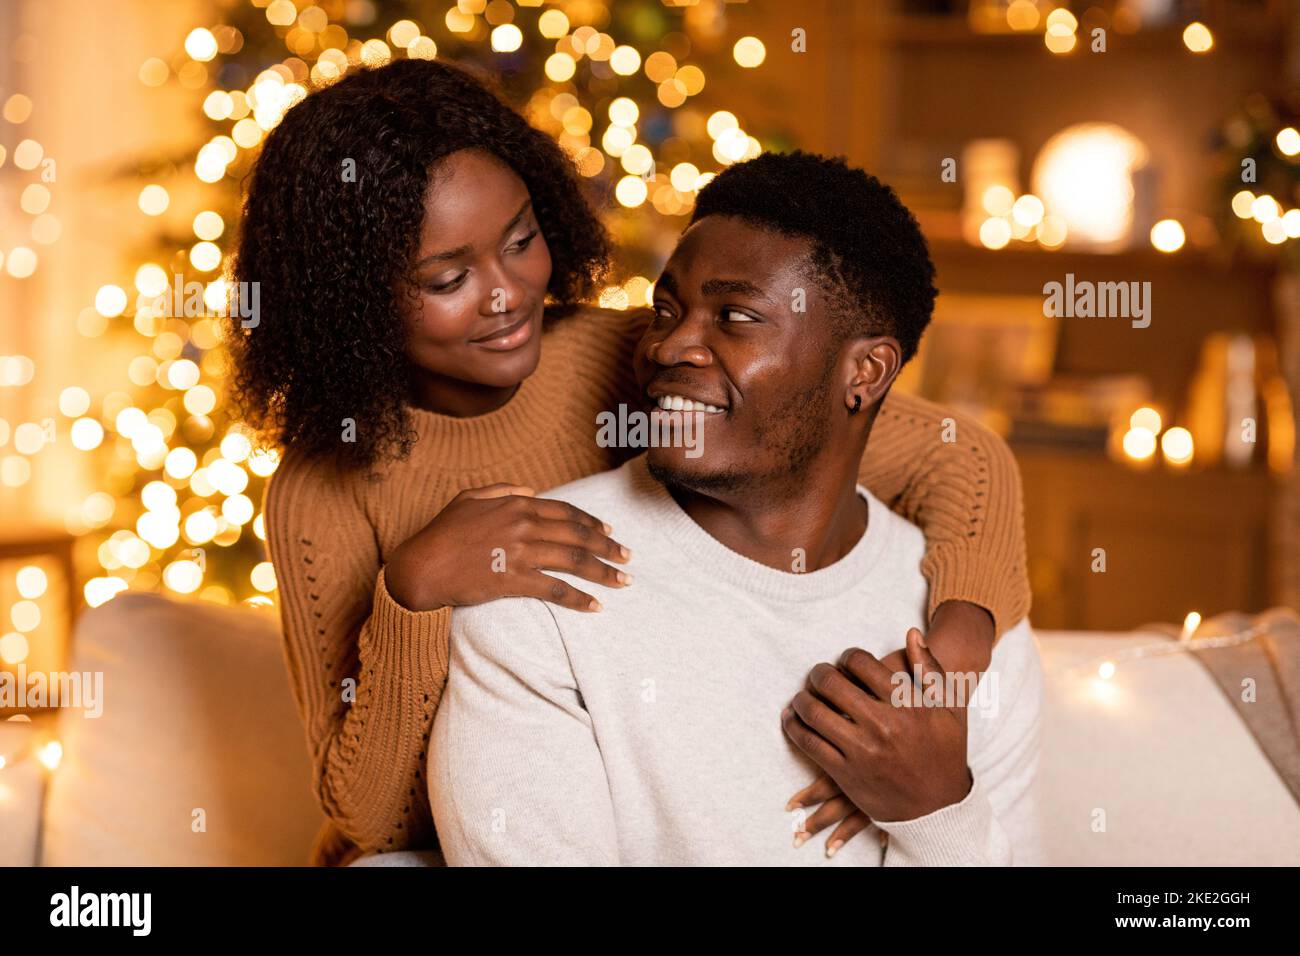 Allegra donna afroamericana millenaria che abbraccia l'uomo, godersi le vacanze insieme nel soggiorno interno Foto Stock